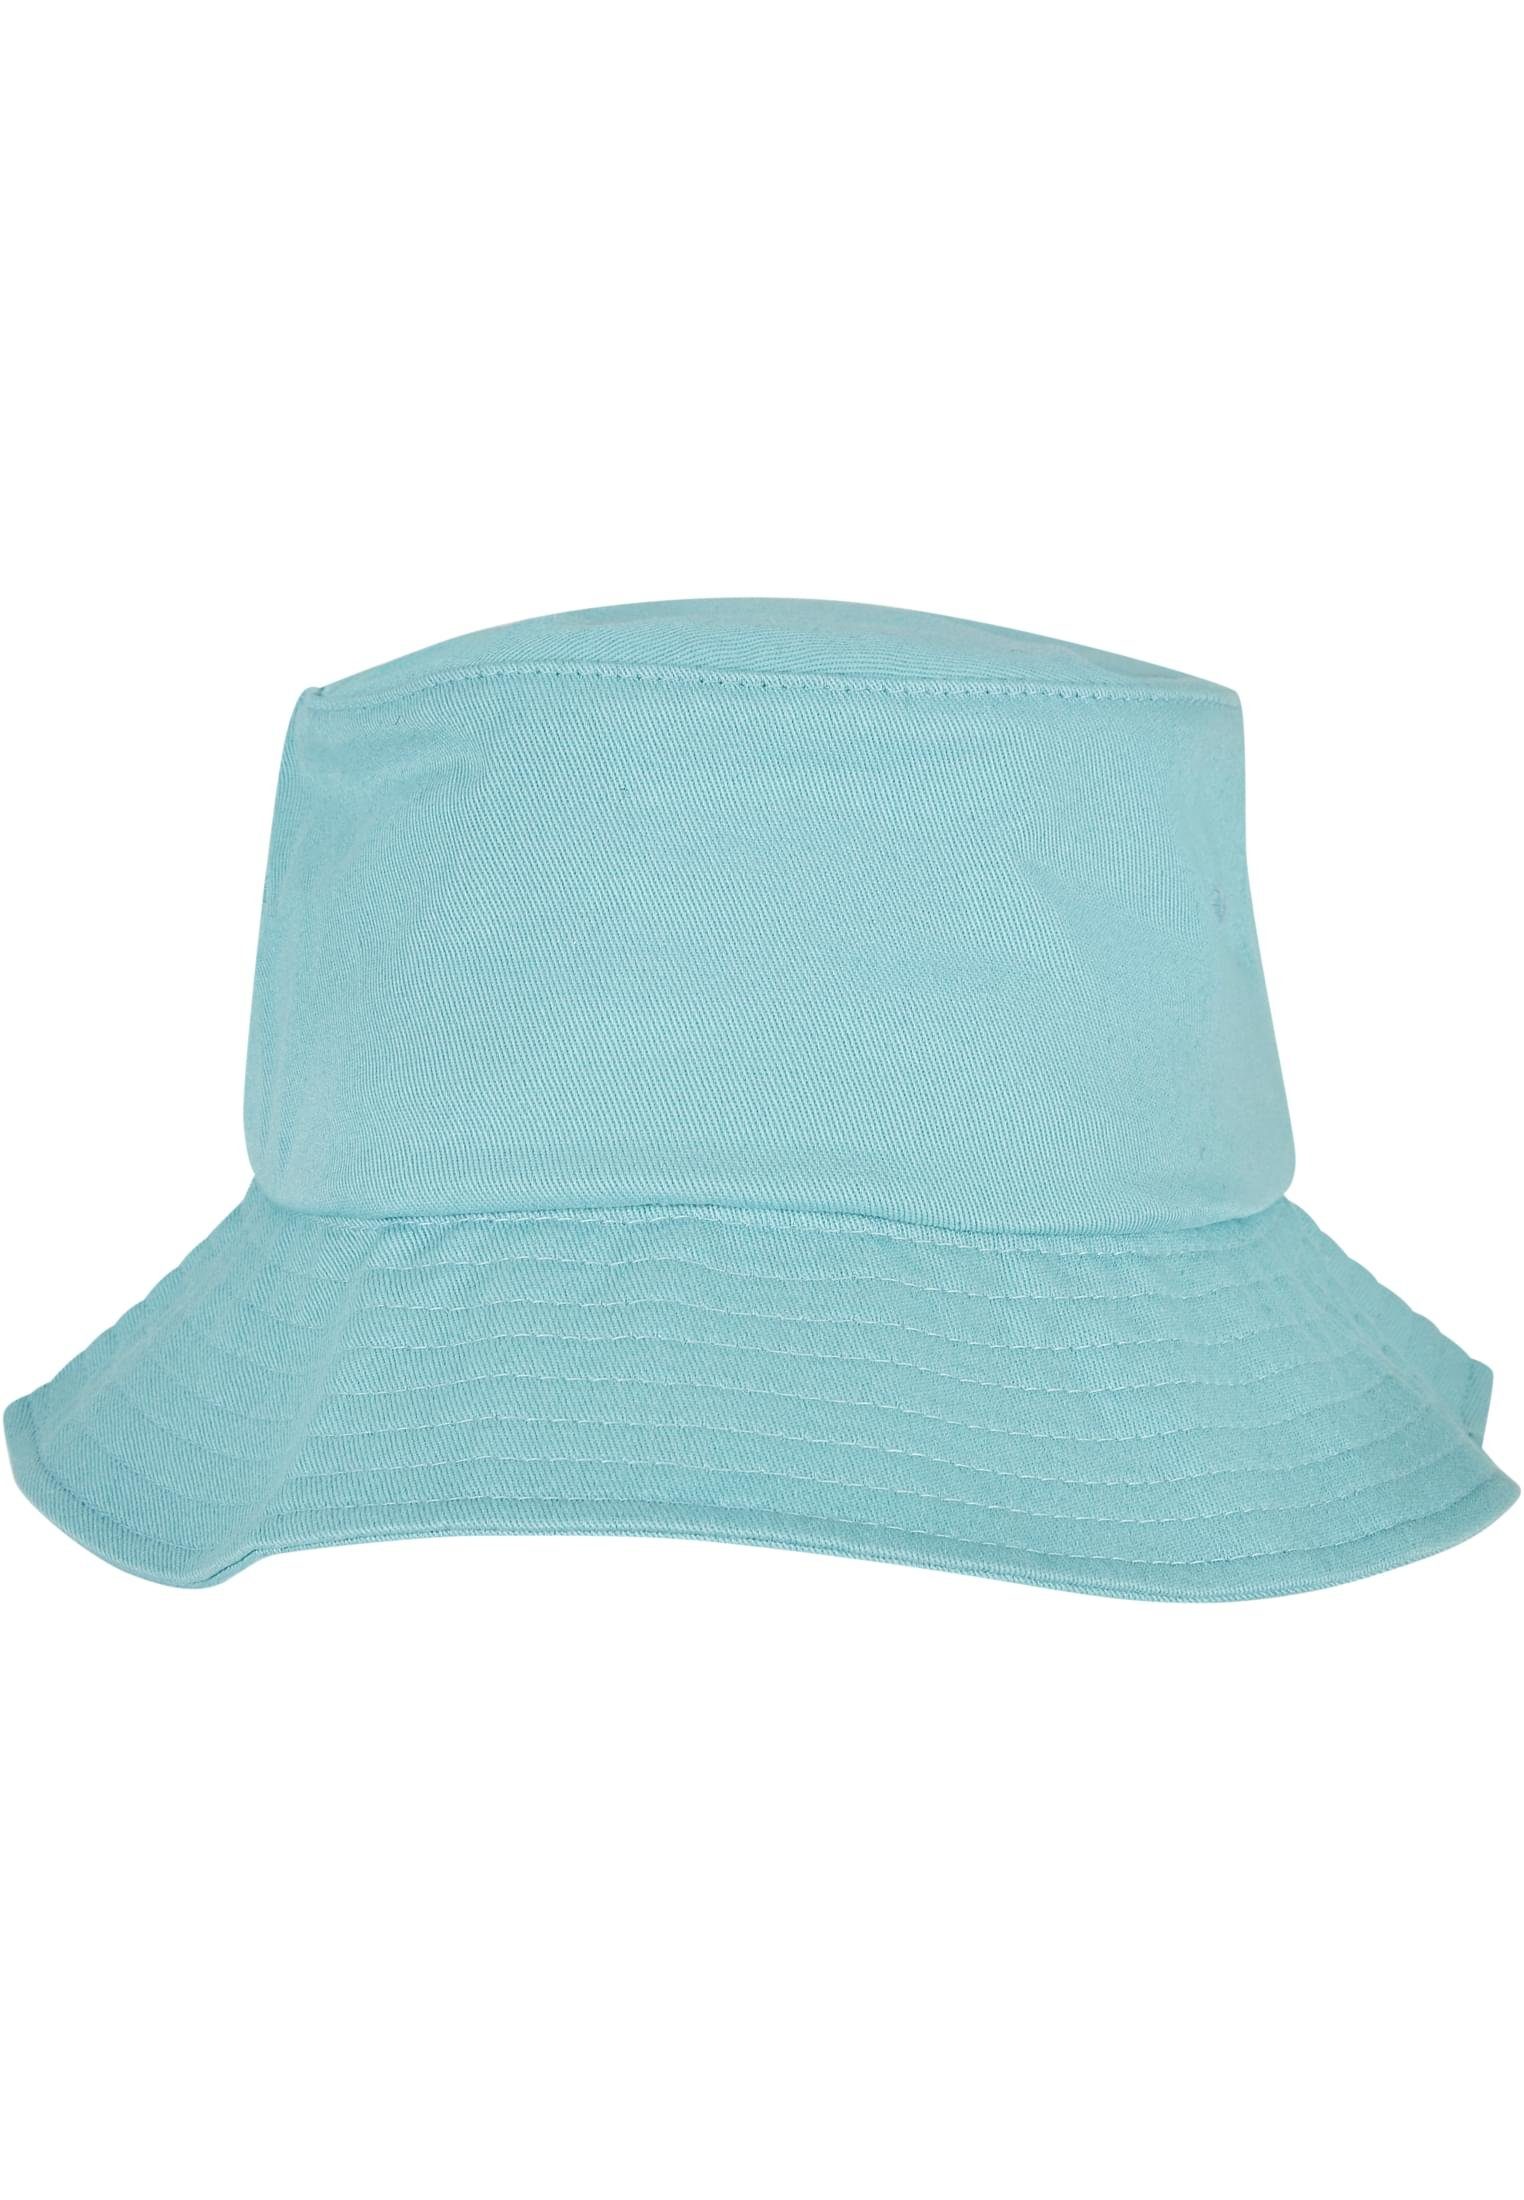 Accessoires Cotton Cap Bucket Hat, Elastangewebte Flexfit Flexfit Flex Krone für komfortablen Twill Tragekomfort